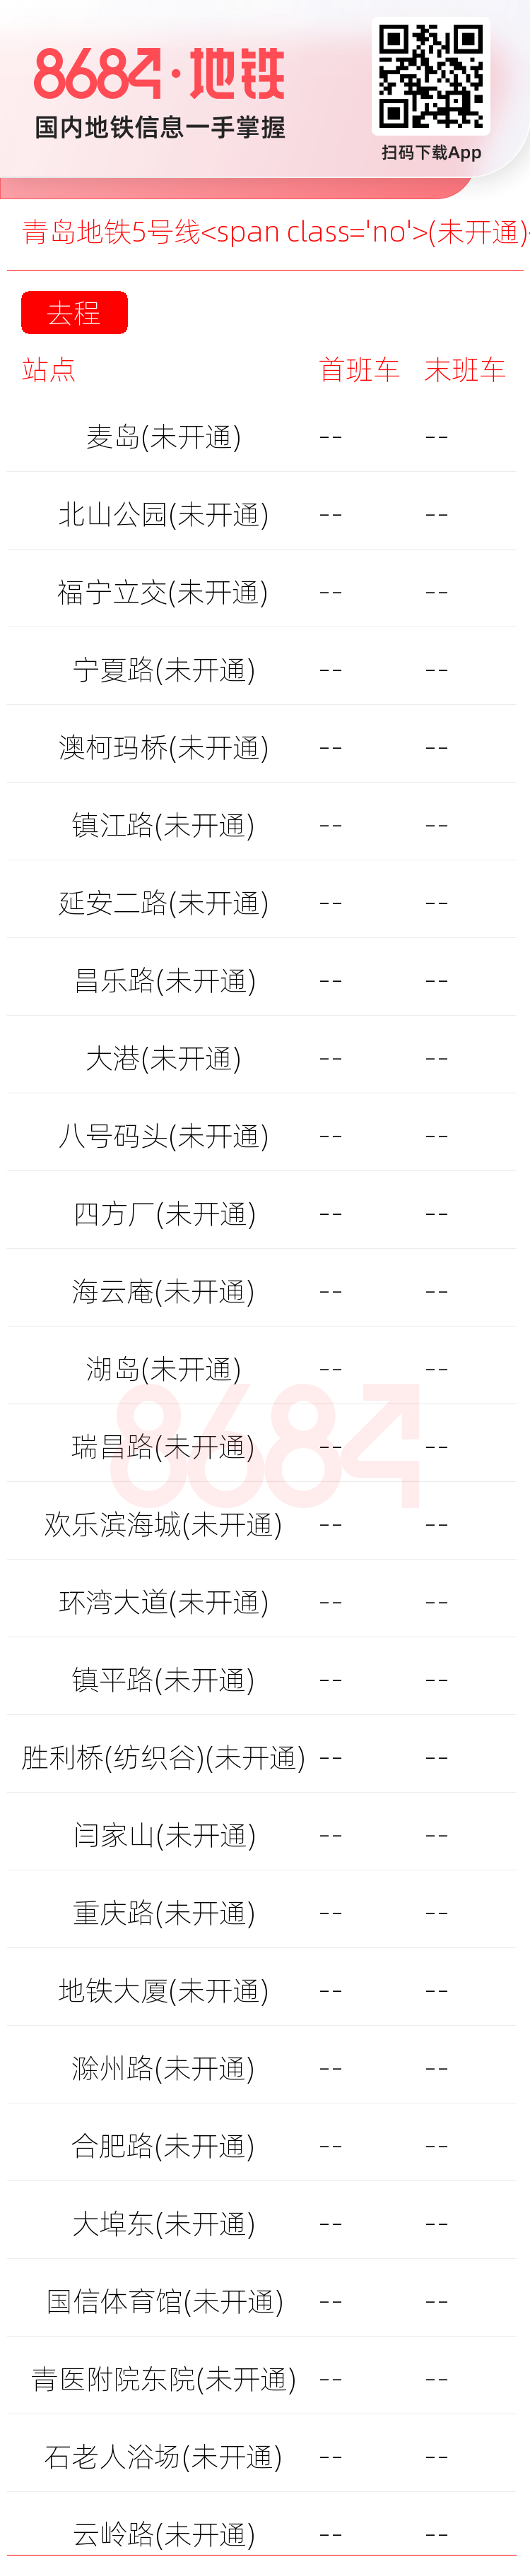 青岛地铁5号线<span class='no'>(未开通)</span>运营时间表